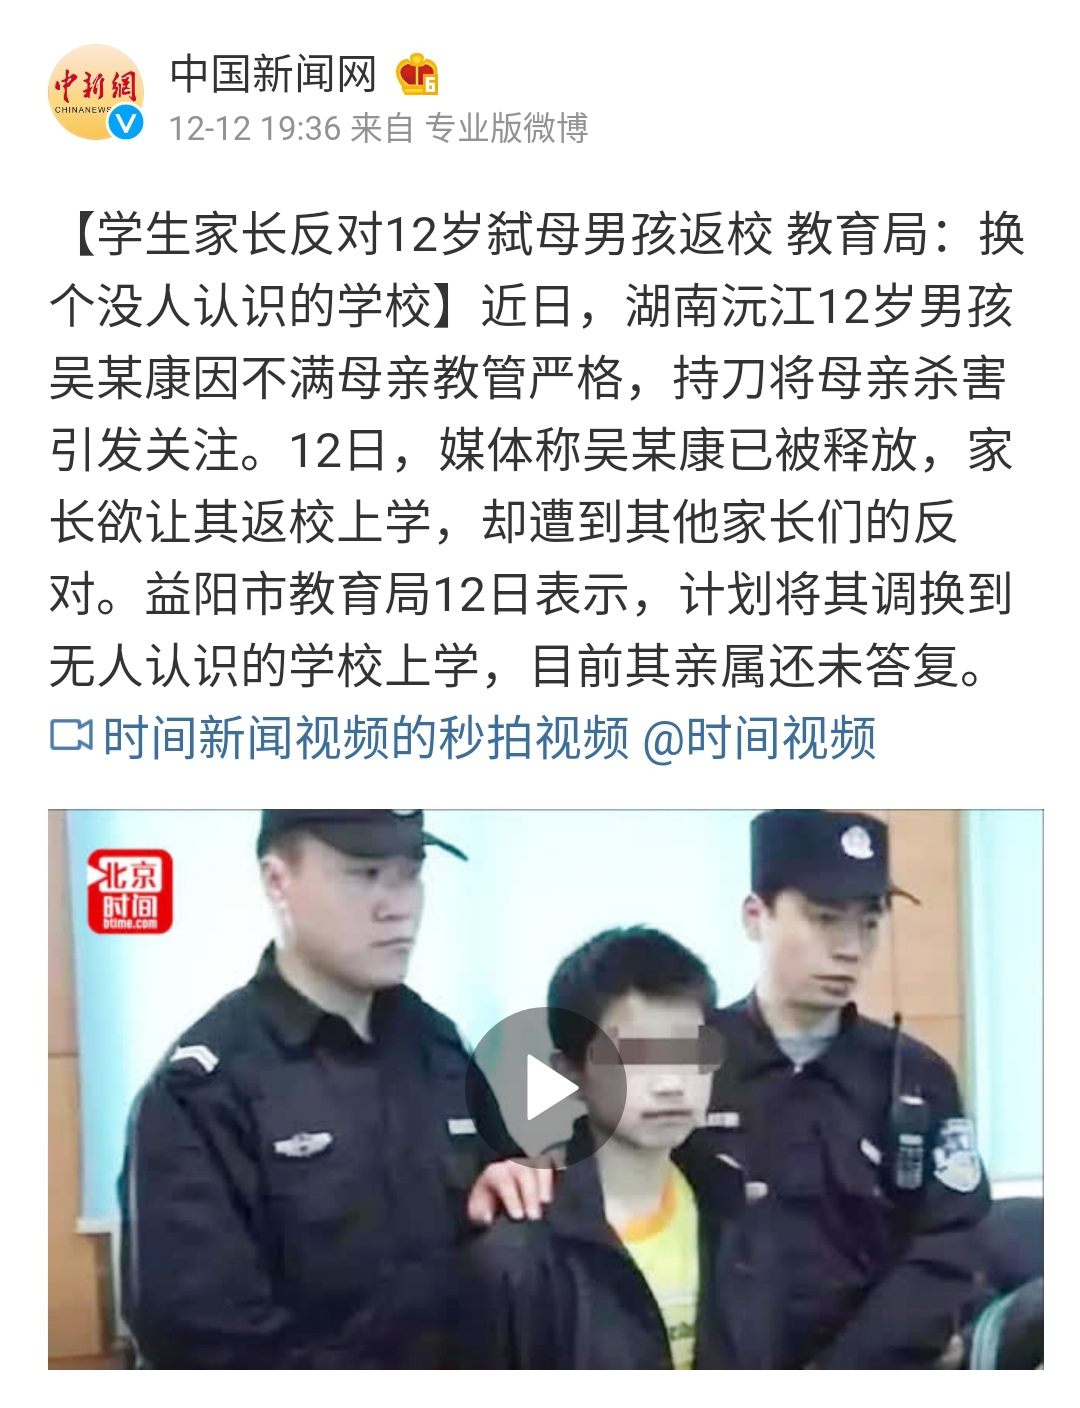 2018年12月6日吴某被无罪释放,因吴某未满14周岁,所以并没进少管所